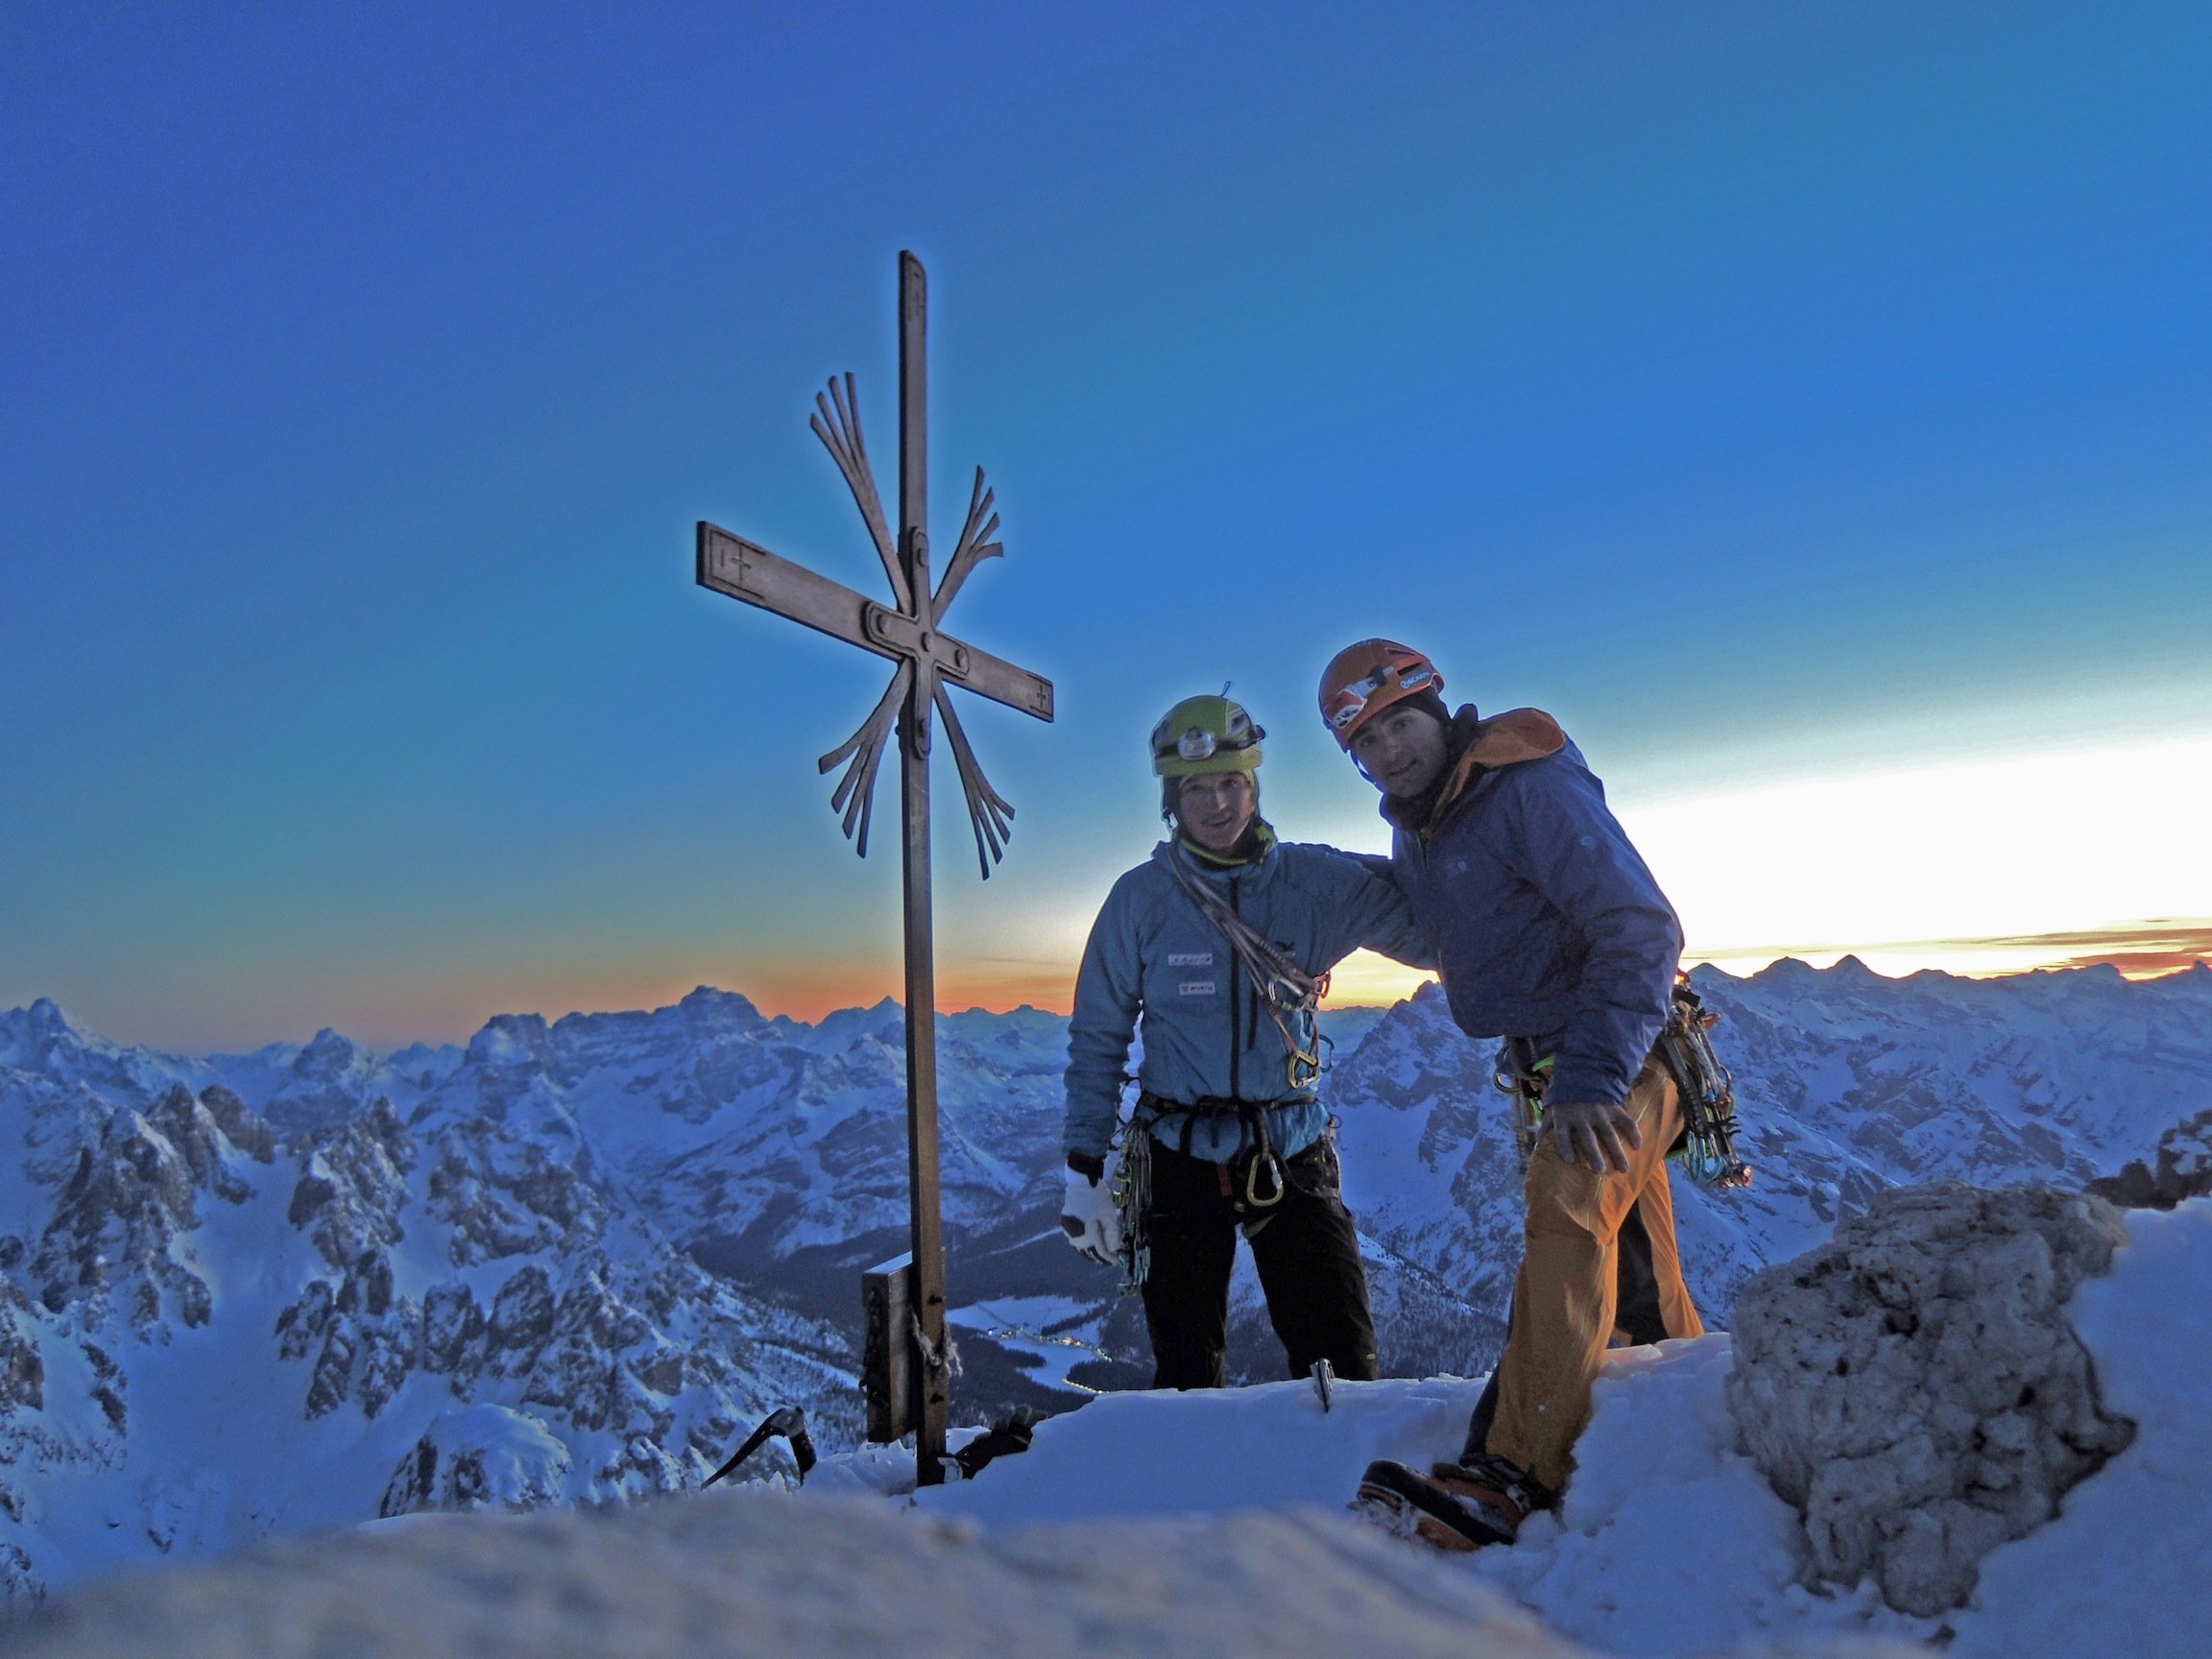 News – Sextener Dolomiten: Michi Wohlleben und Ueli Steck meistern Wintertrilogie an den Drei Zinnen